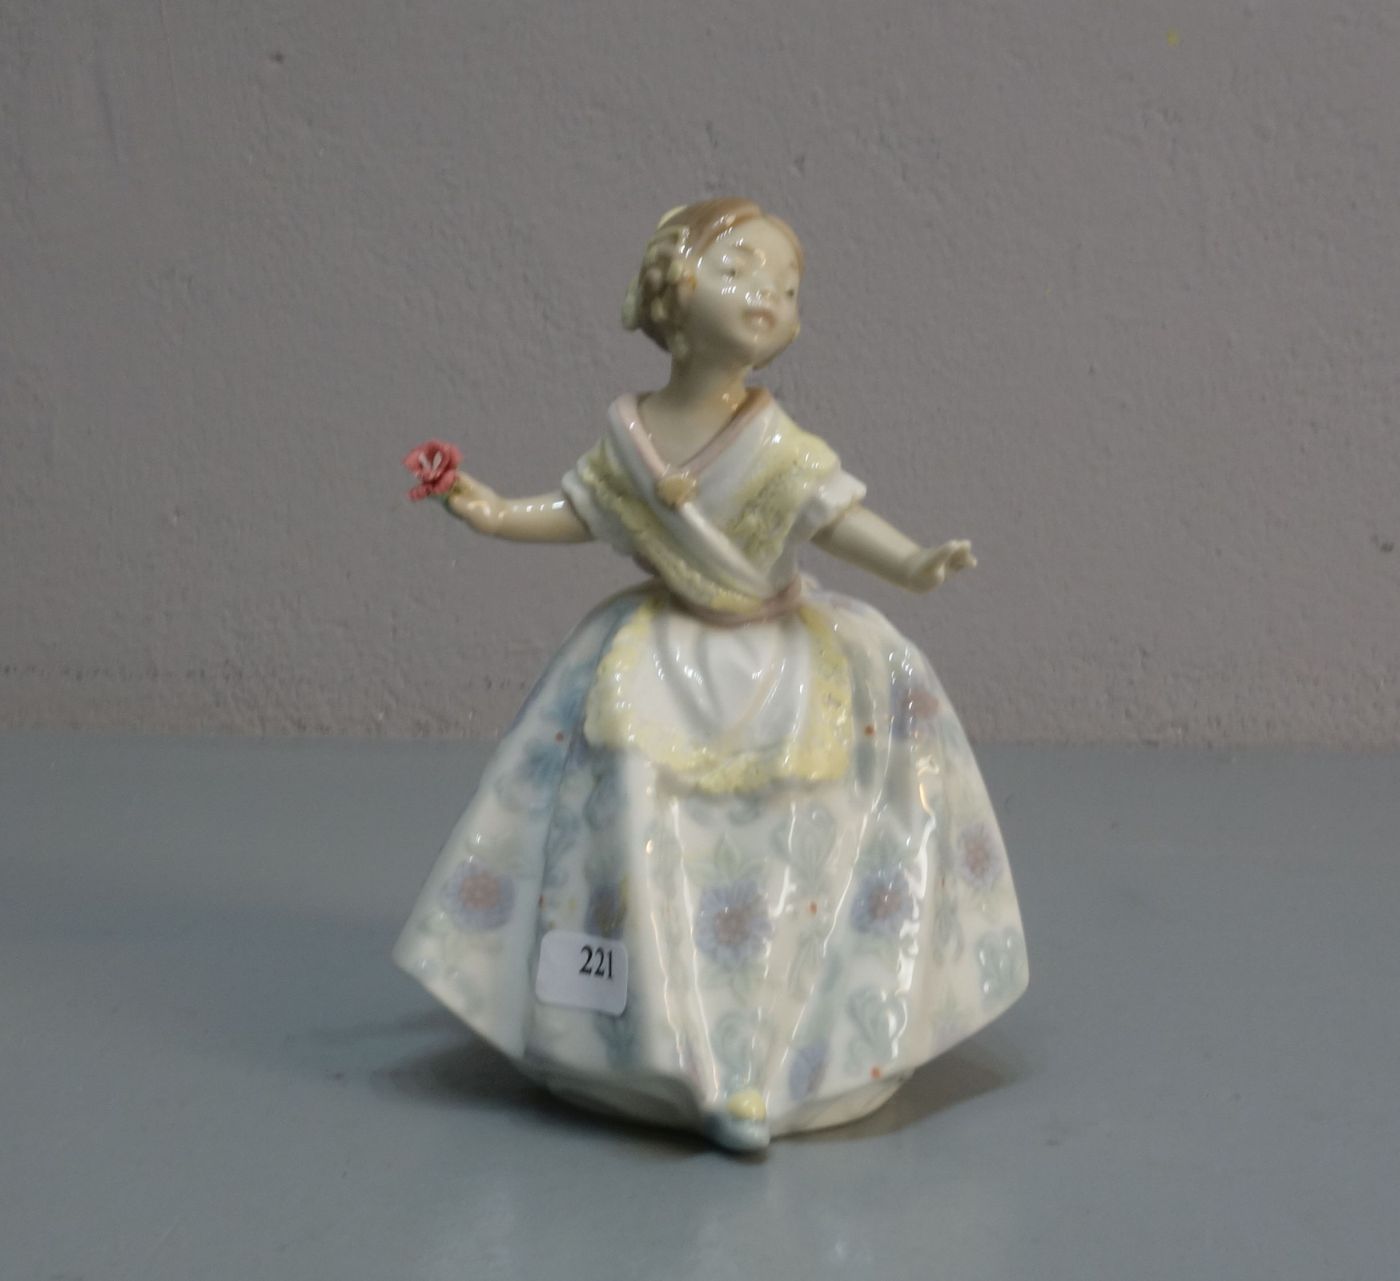 FIGUR: "Spanische Tänzerin" / porcelain figure: "spanish dancer", Porzellan, Manufaktur Lladro,